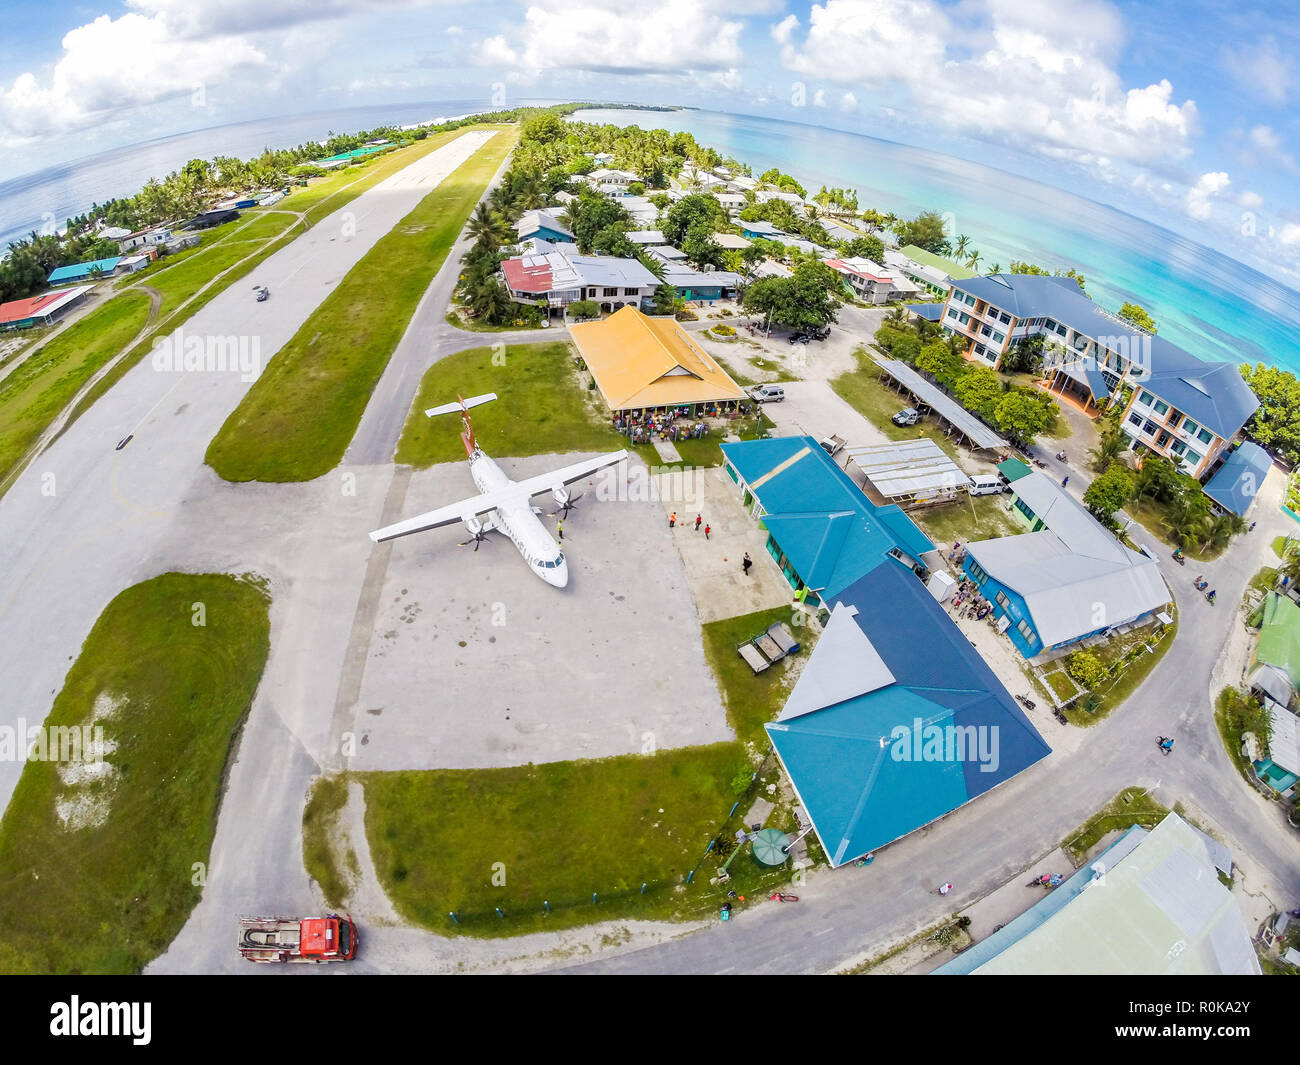 Un avion sur le tarmac de l'aéroport international de Tuvalu, vient d'arriver. Vaiaku village, Fongafale motu, l'atoll de Funafuti, Polynésie, Océan Pacifique Sud. Banque D'Images